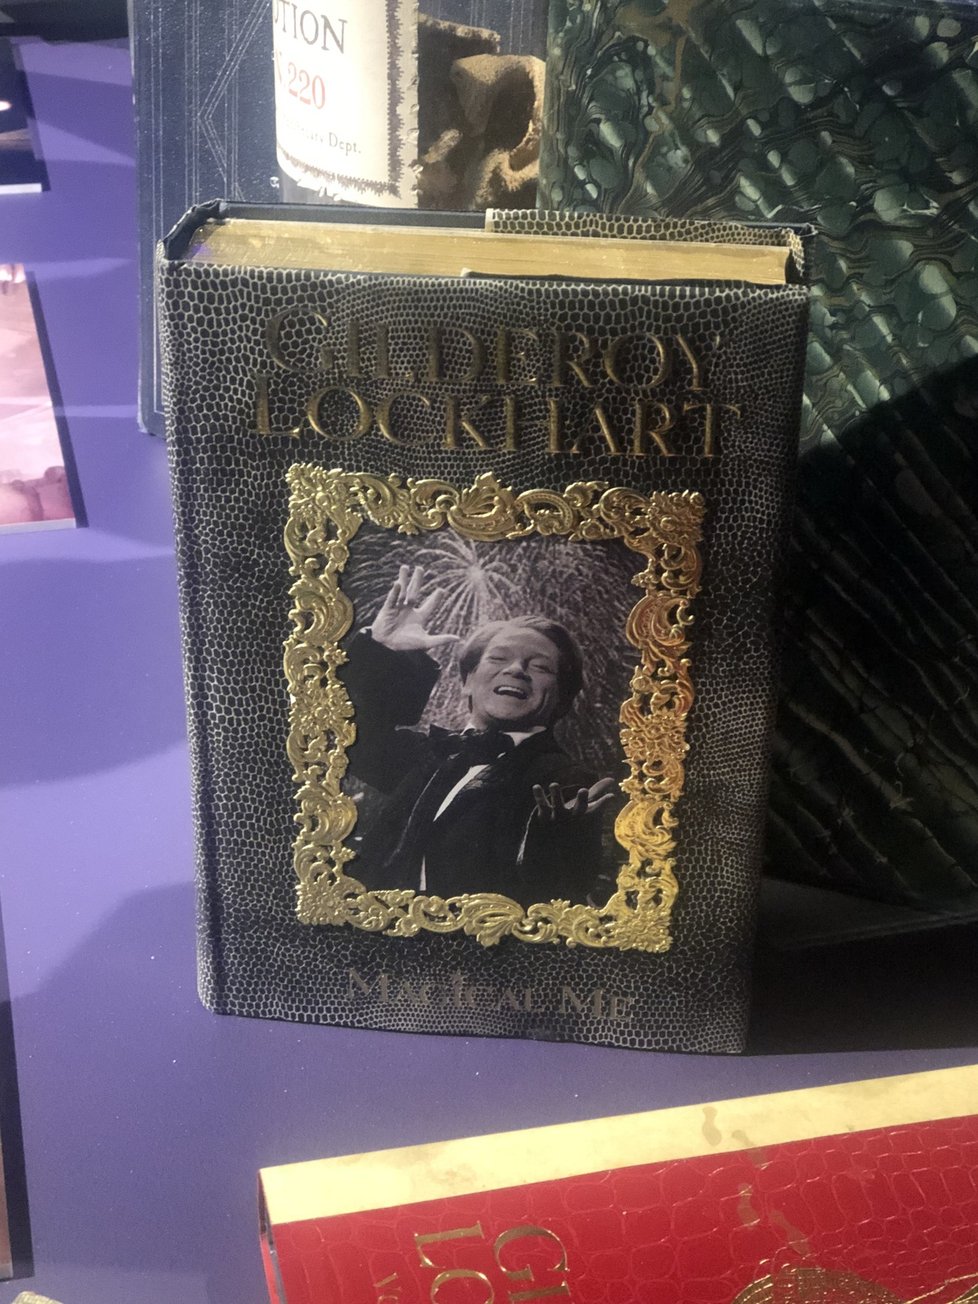 Fotografická výstava filmů o Harrym Potterovi na Covent Garden